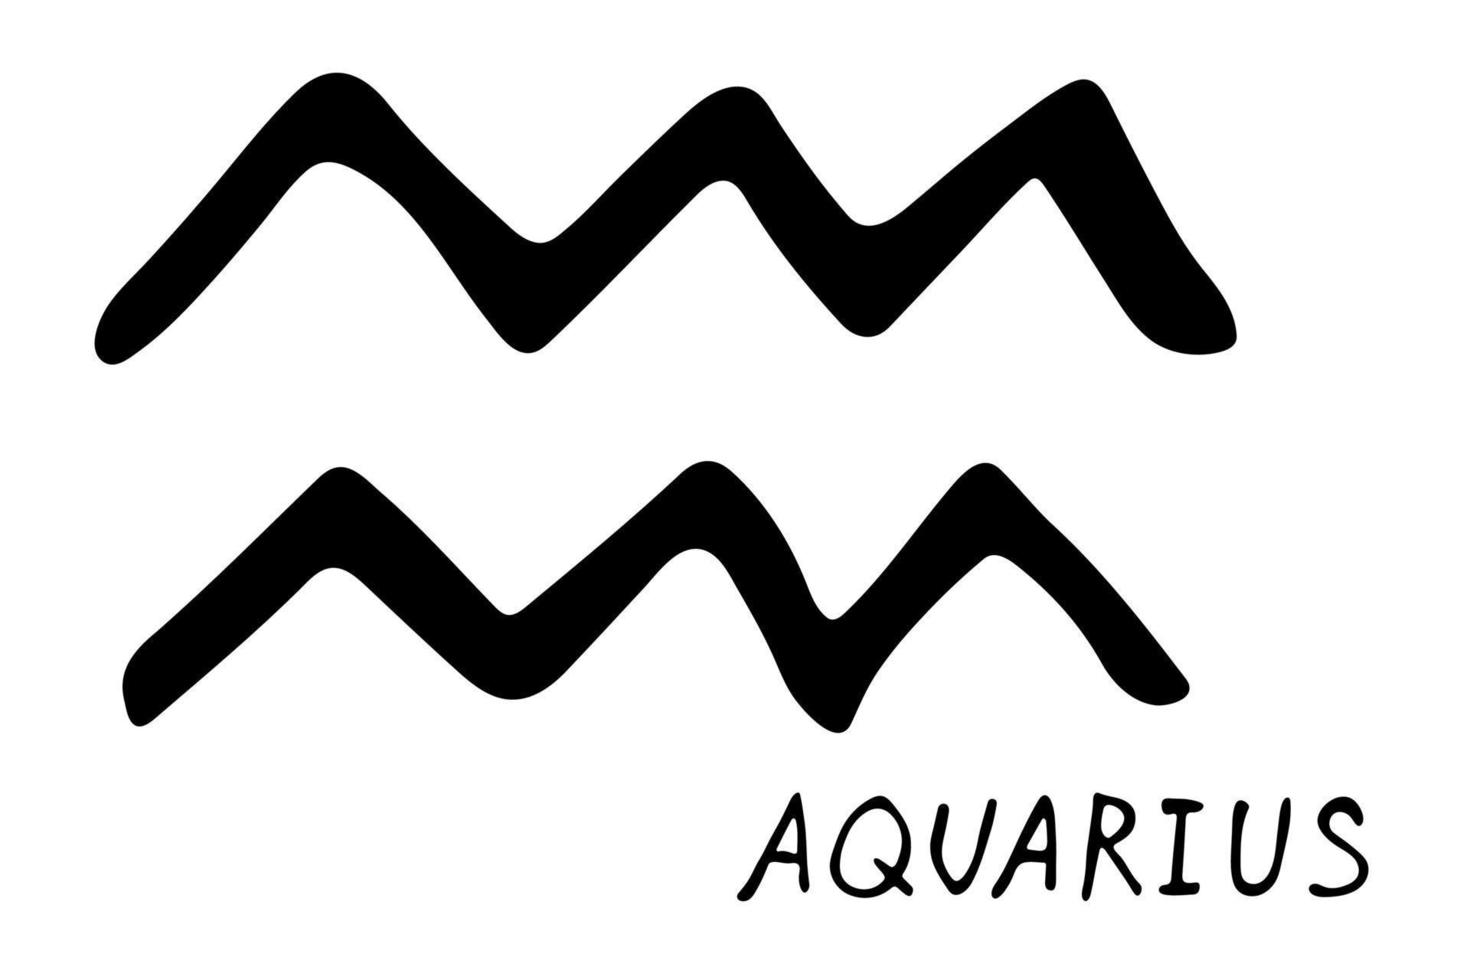 hand dragen aquarius zodiaken tecken esoterisk symbol klotter astrologi ClipArt element för design vektor